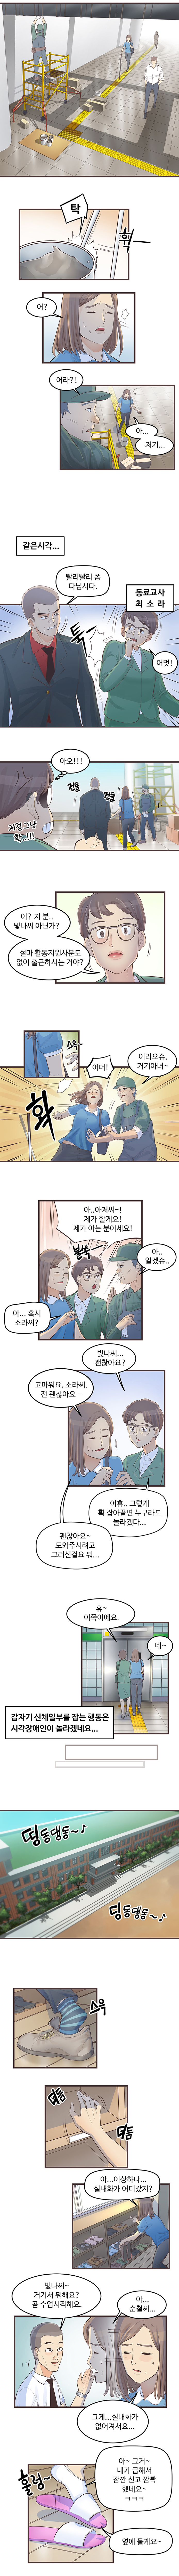 중증시각장애인 김빛나 웹툰 4화. 원고는 하단을 참조하세요.